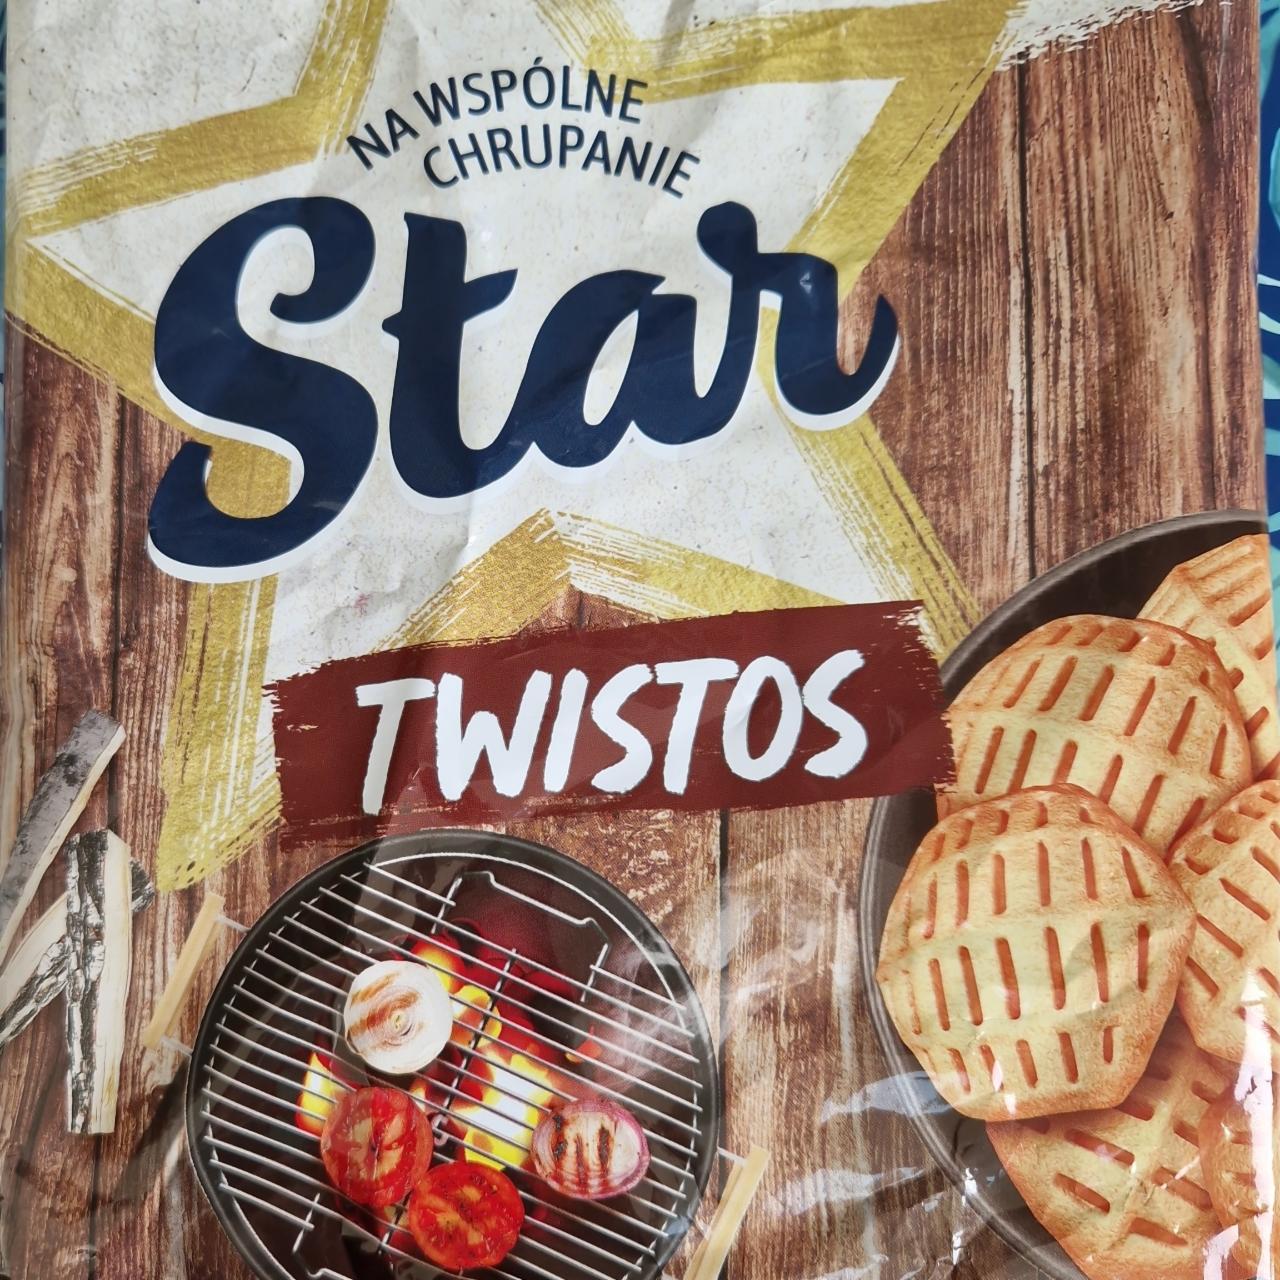 Fotografie - Twistos Texas Grill przekąski ziemniaczane o smaku grillowanych warzyw Star